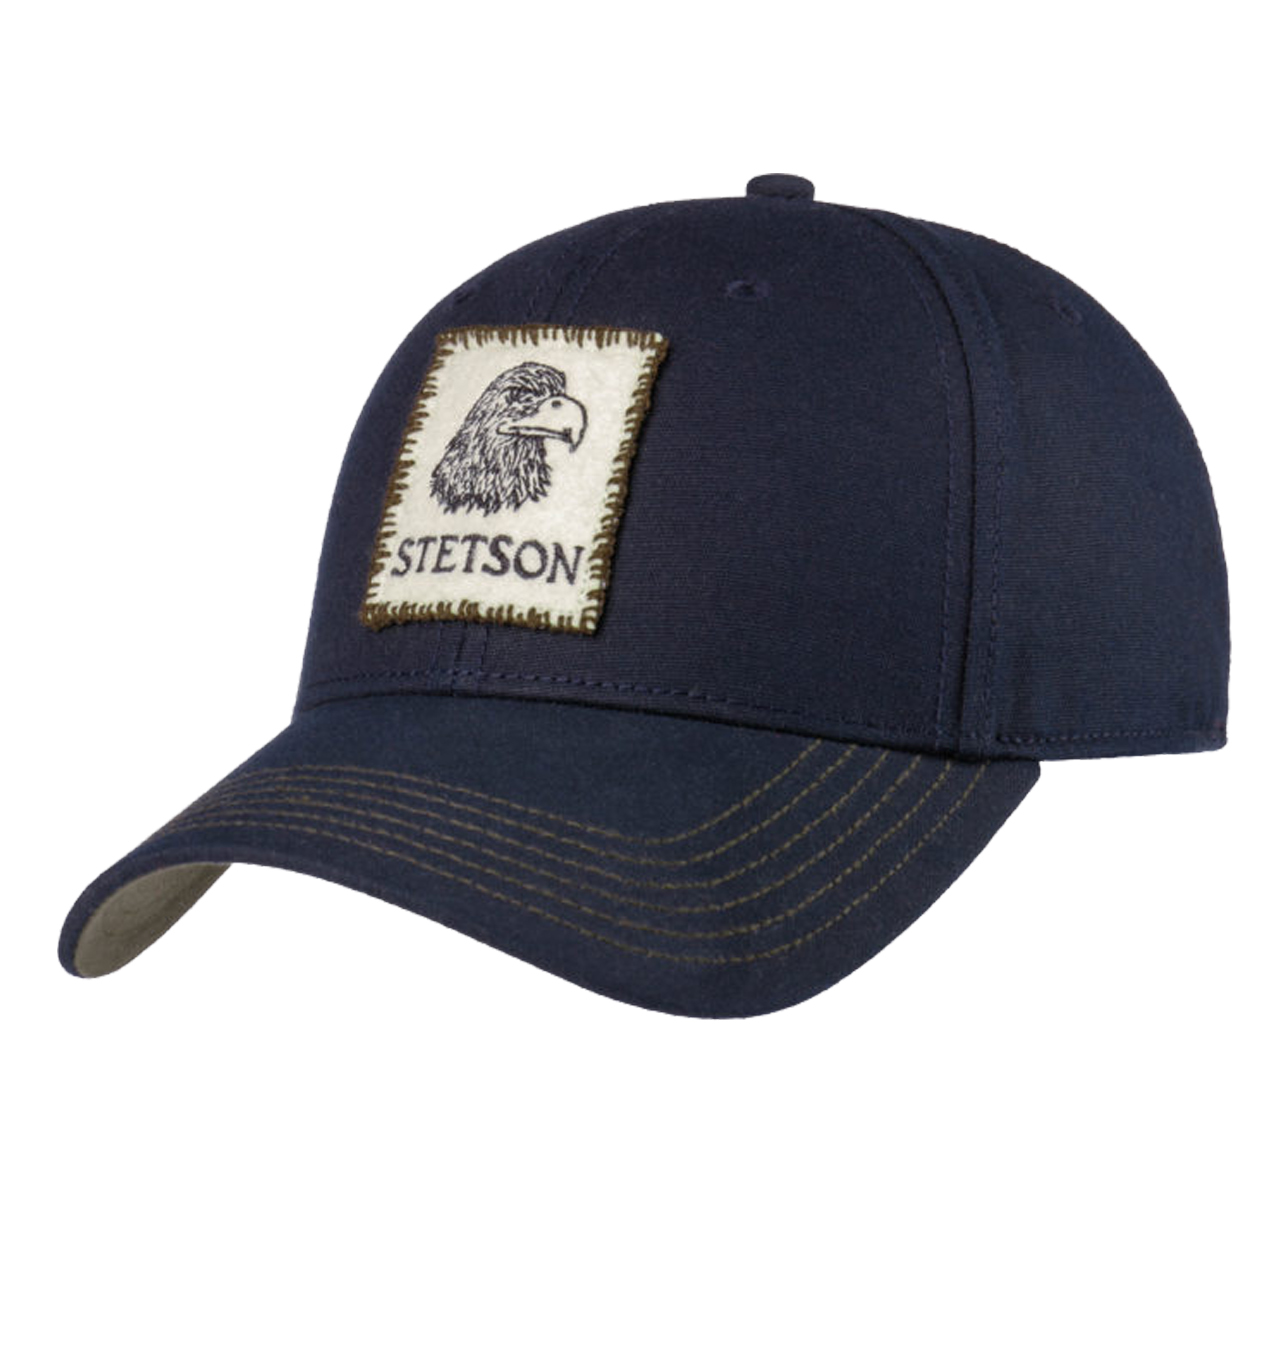 Stetson - Vintage Eagle Waxed Baseball Cap - Navy